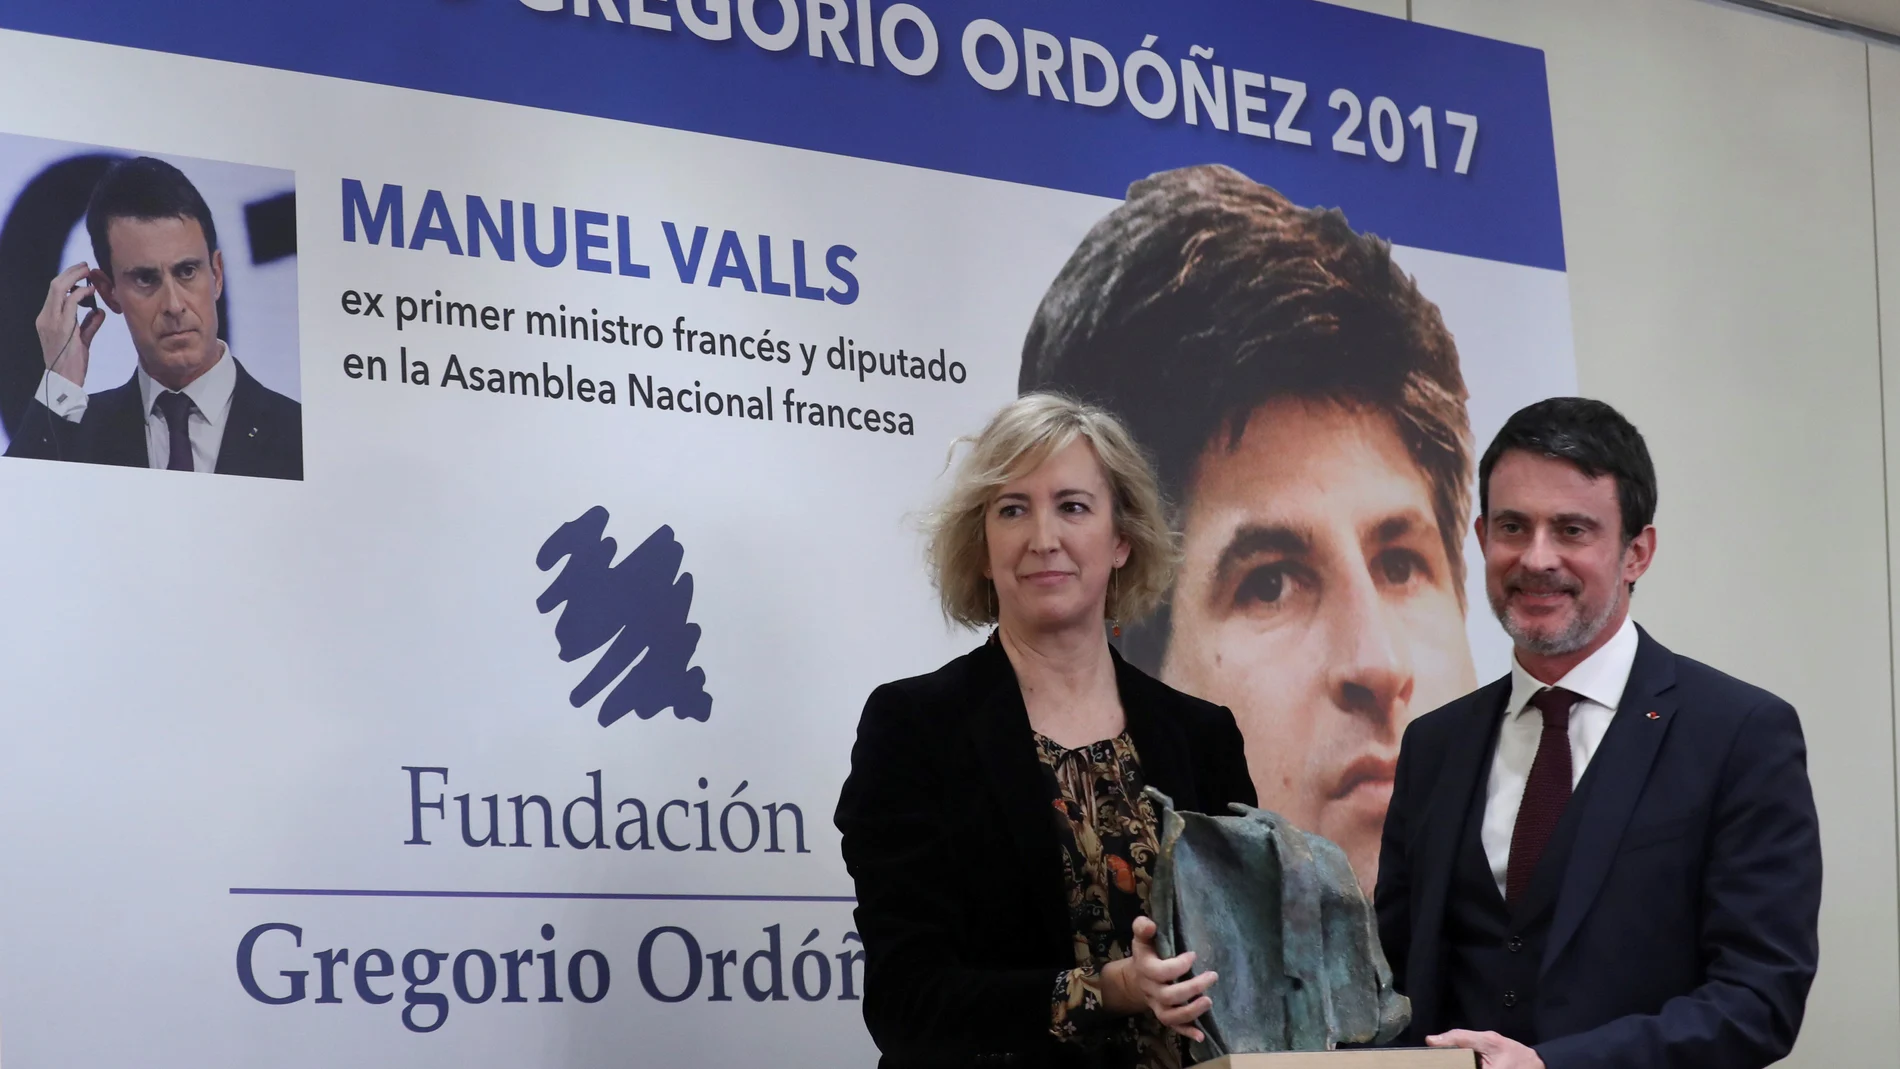 El exprimer ministro de Francia Manuel Valls recibe el Premio Gregorio Ordóñez